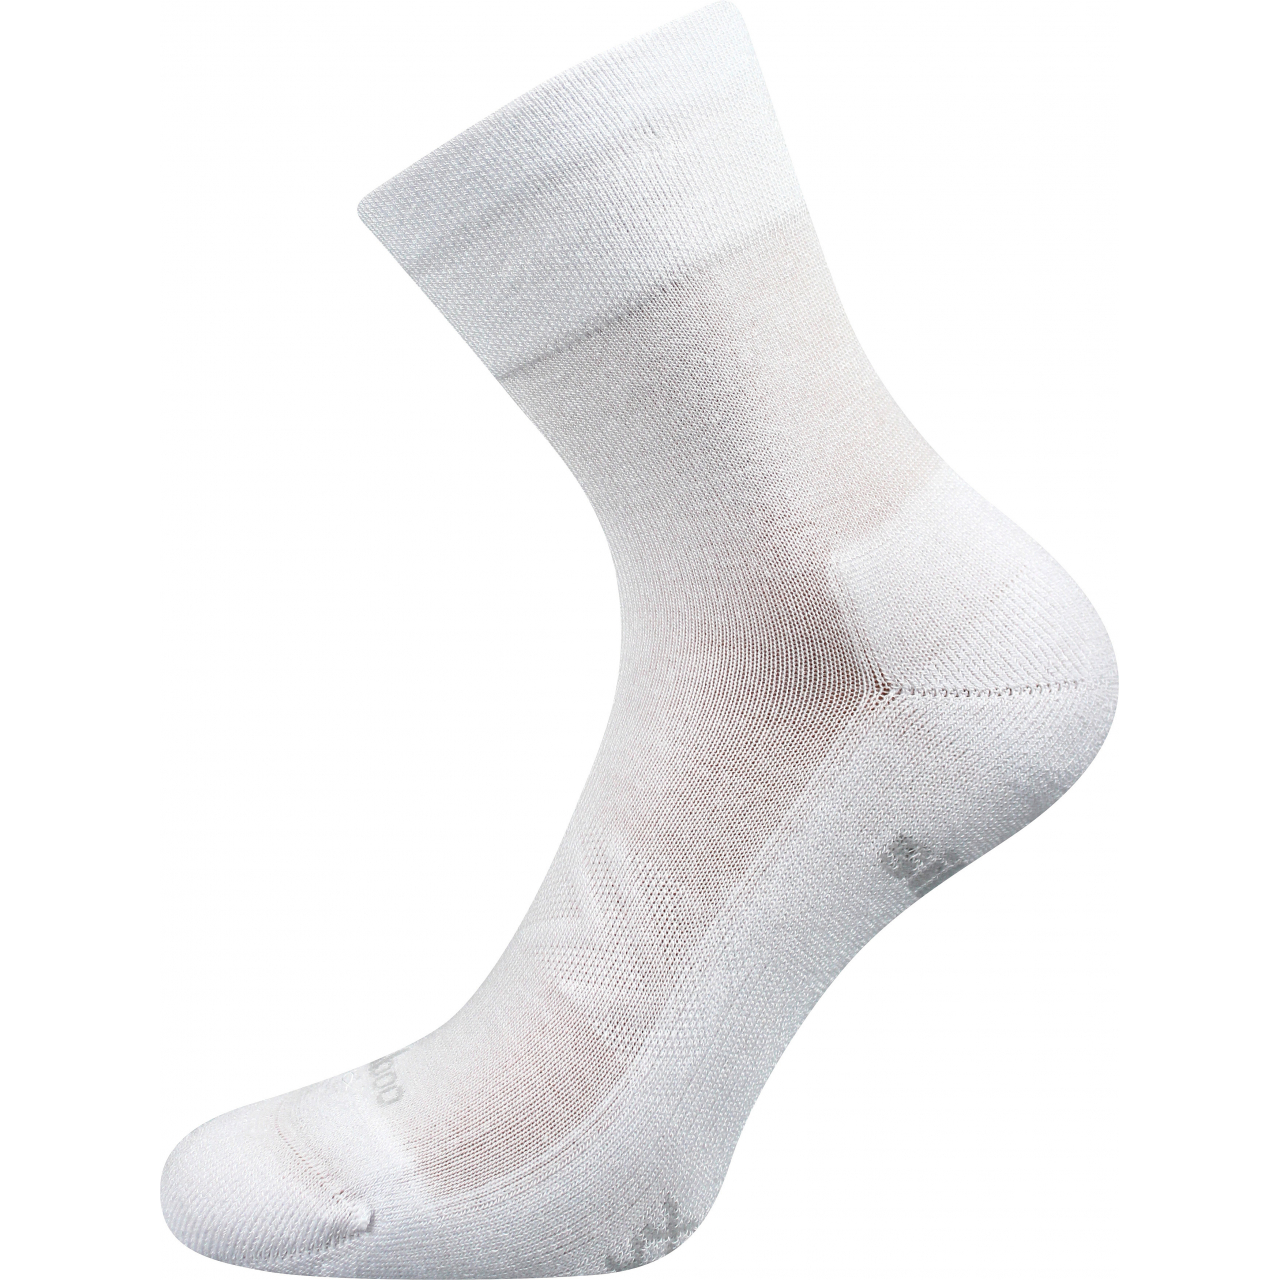 Ponožky sportovní unisex Voxx Esencis - bílé, 35-38